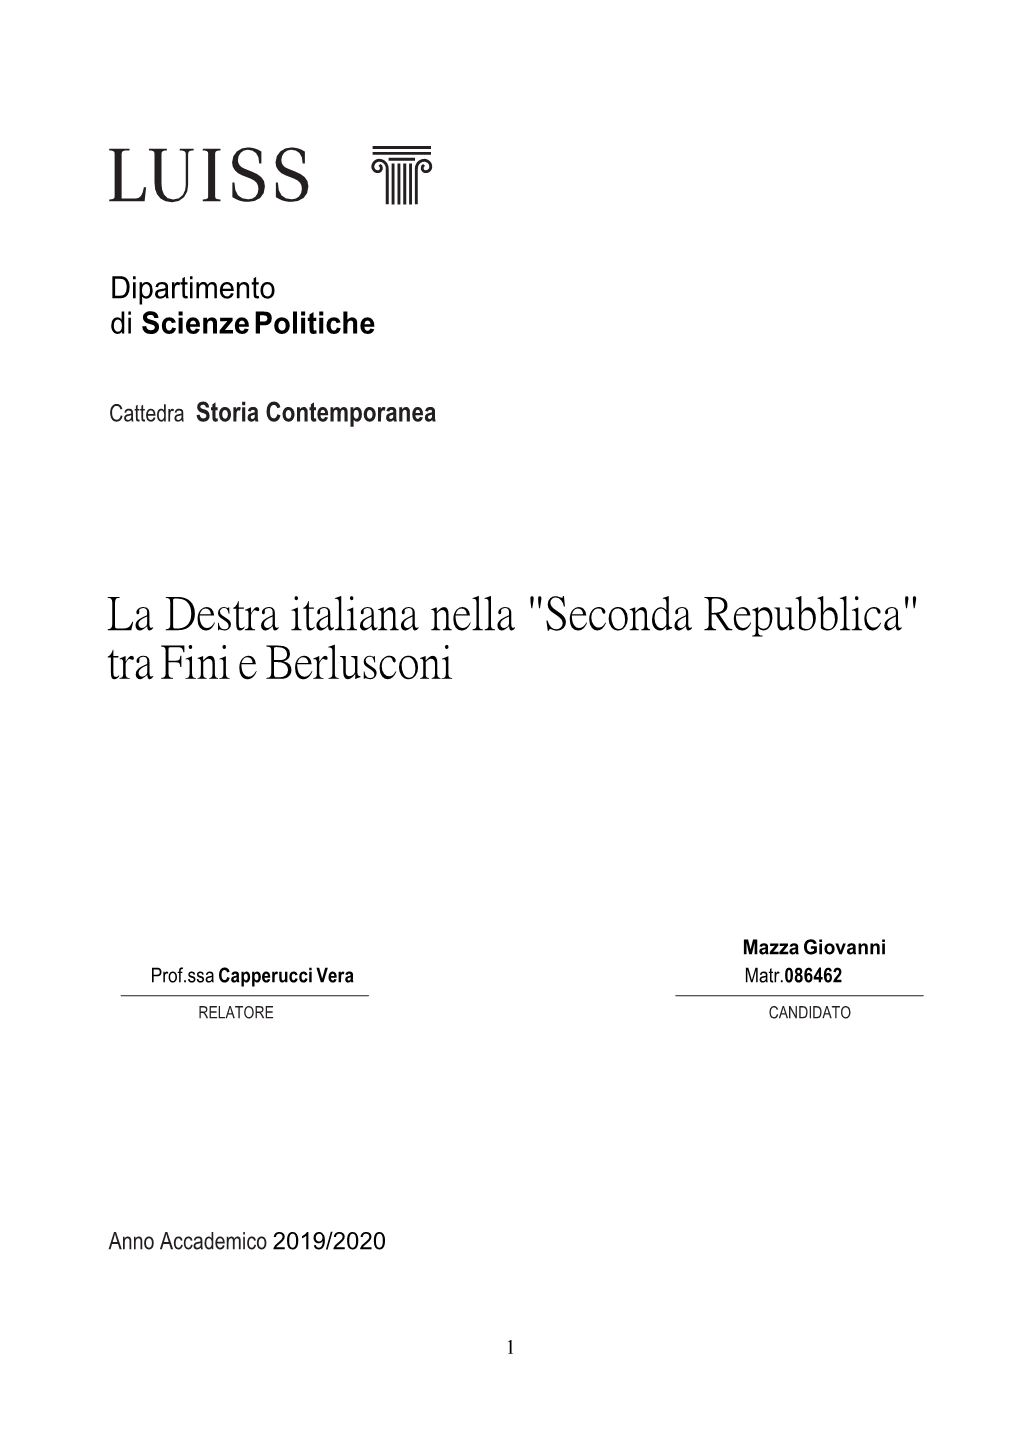 La Destra Italiana Nella "Seconda Repubblica" Tra Fini E Berlusconi